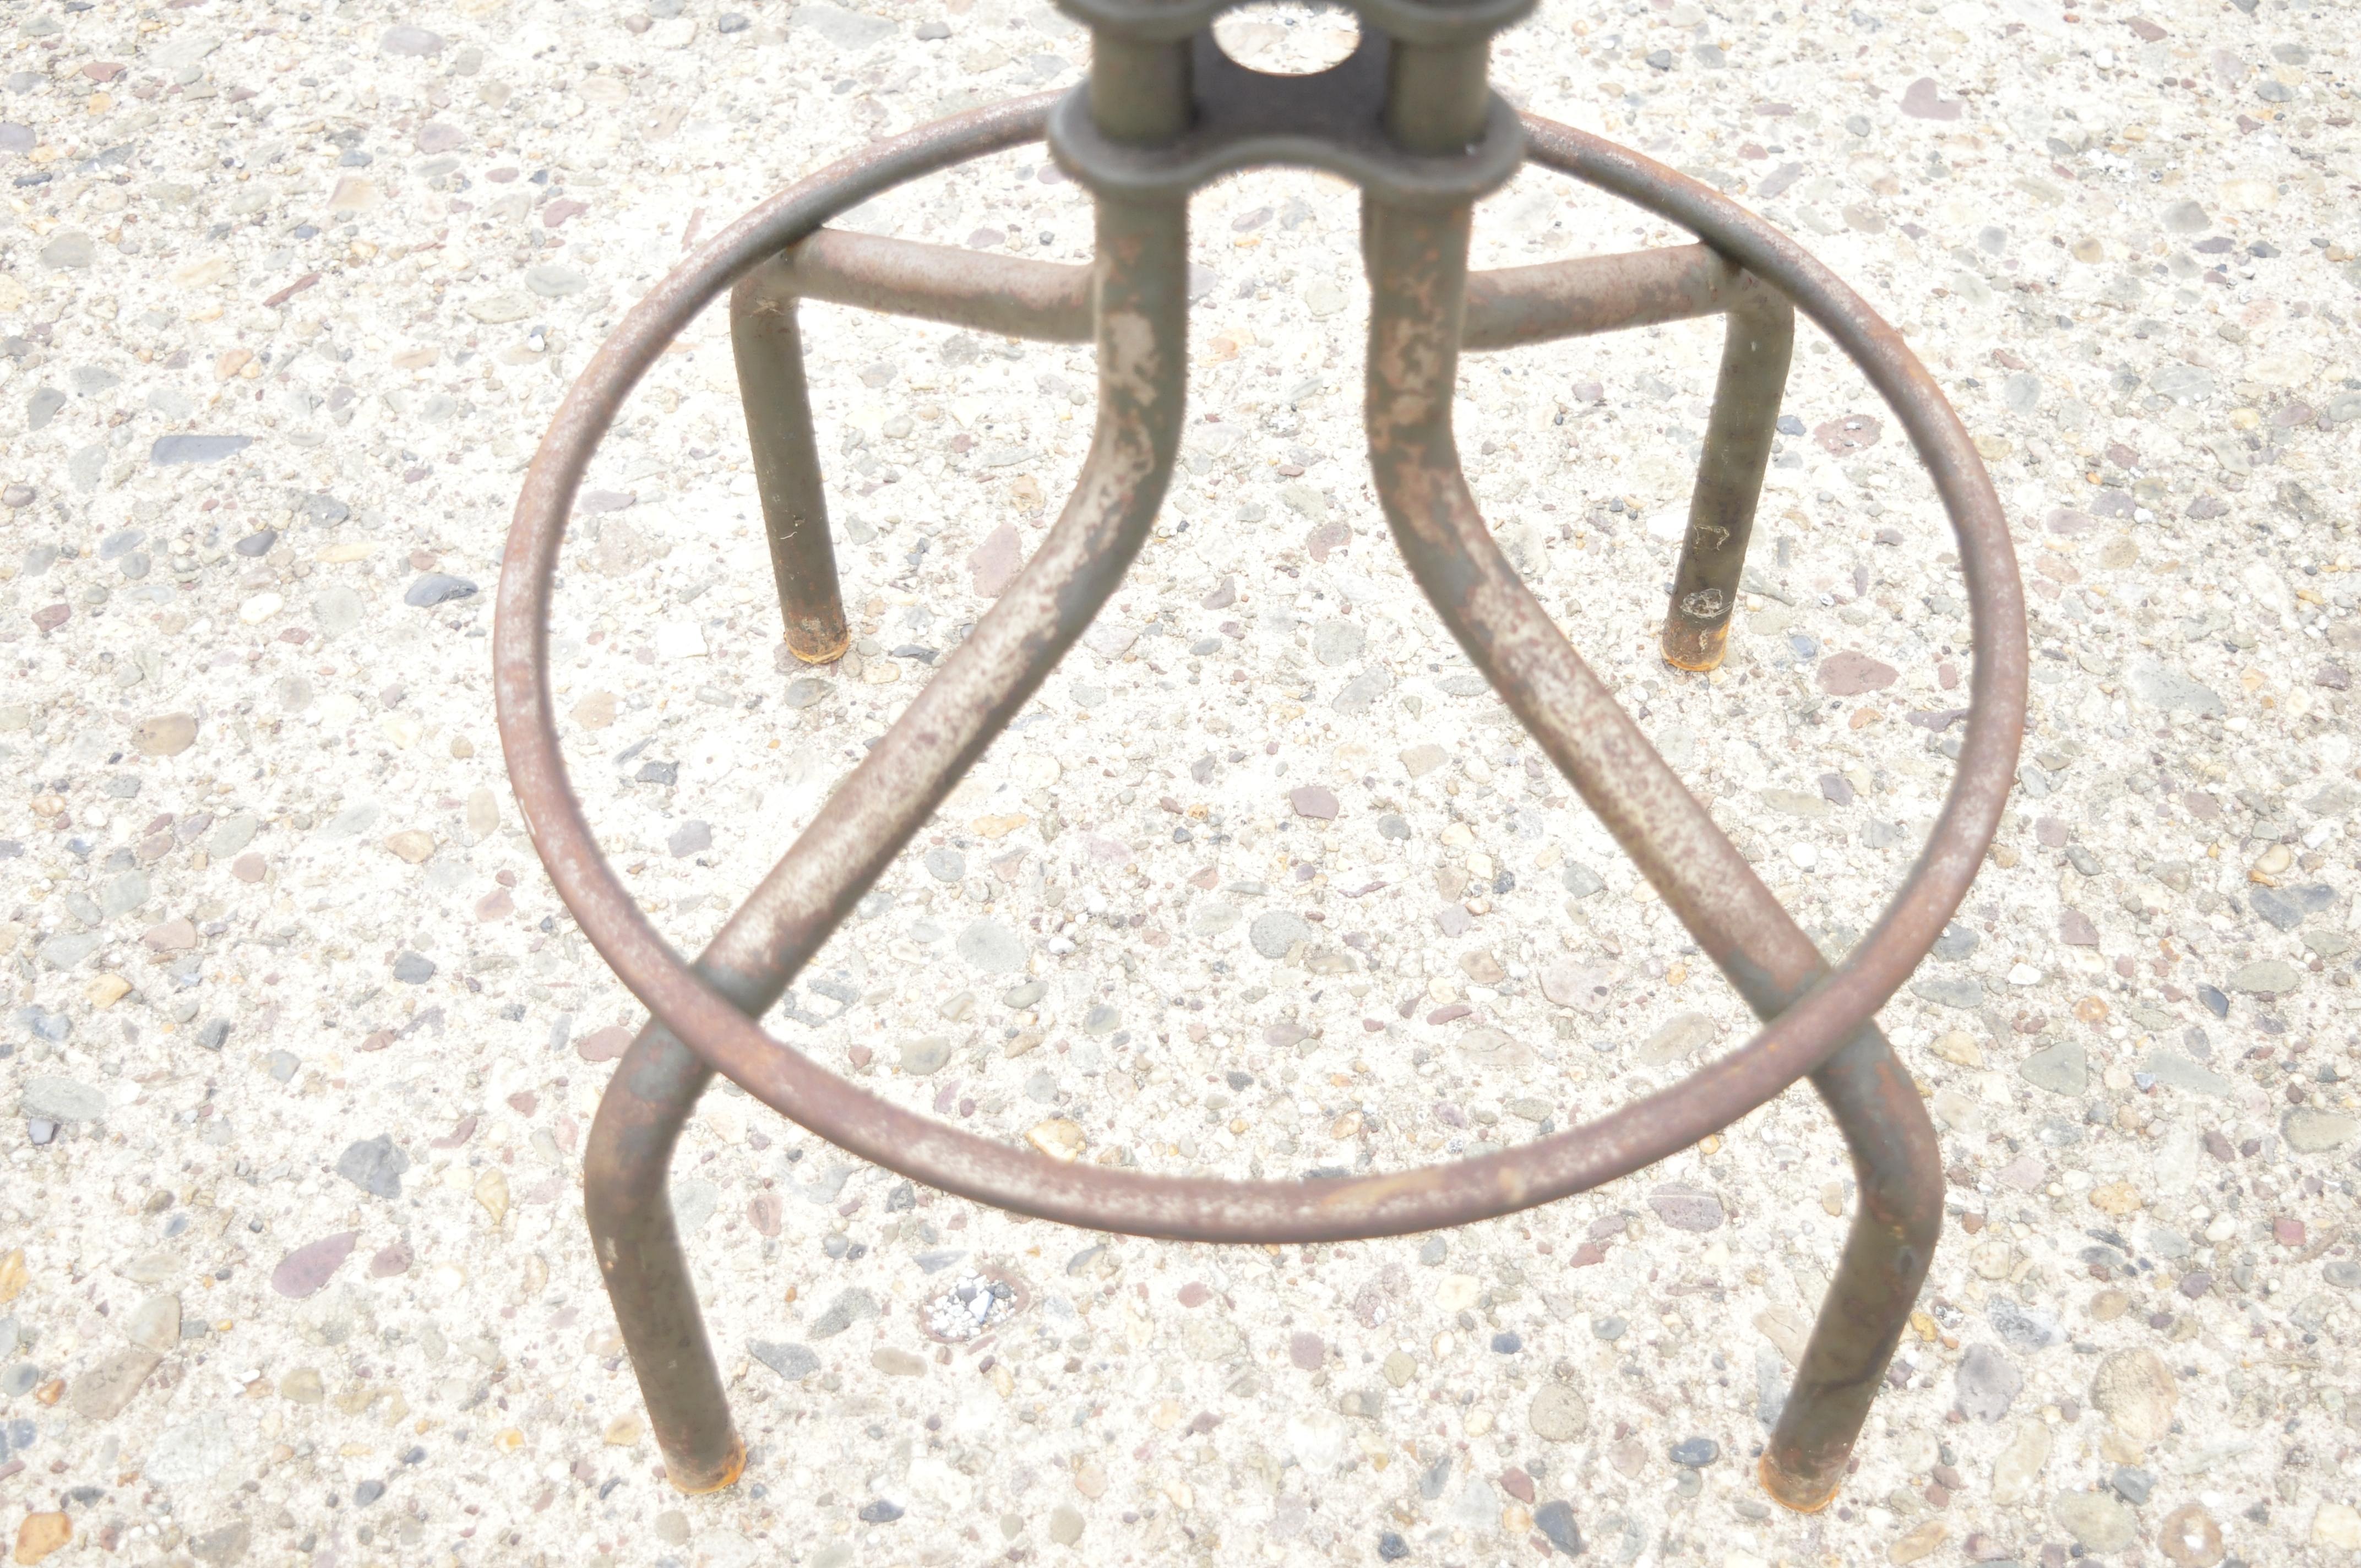 Antique American Industrial Adjustable Steel Metal Drafting Stool Work Chair 1